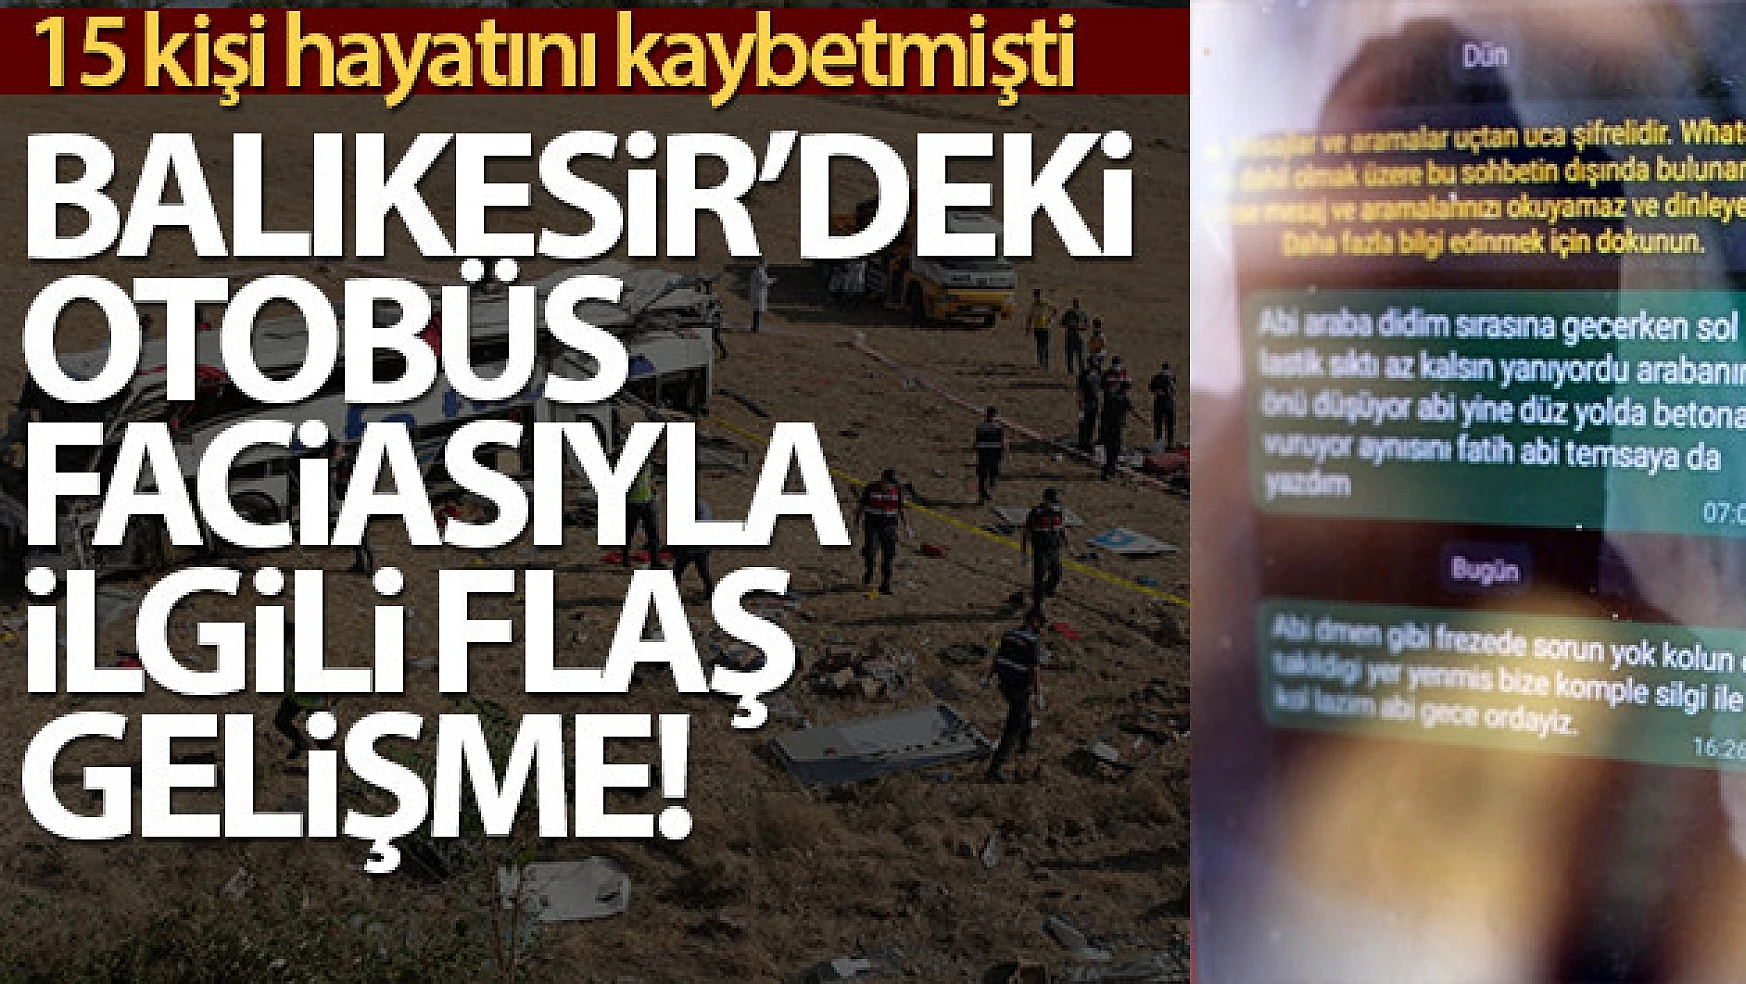 Balıkesir'deki otobüs faciası öncesi şoförün yakınlarına aracın arızalı olduğu mesajı attığı iddiası